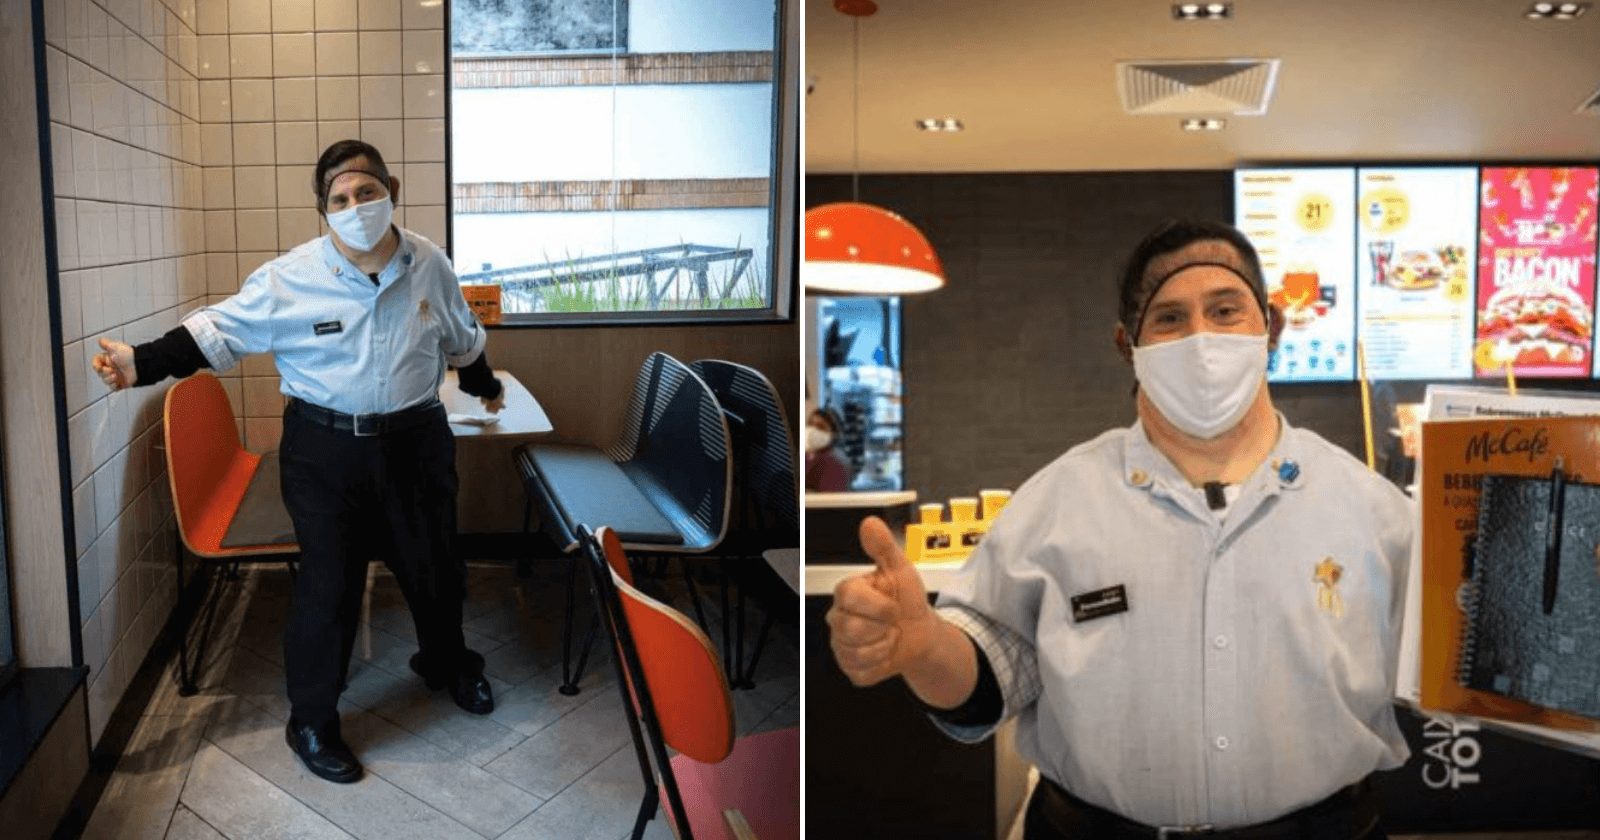 Funcionário do McDonald's com Síndrome de Down conquista o carinho dos clientes e colegas